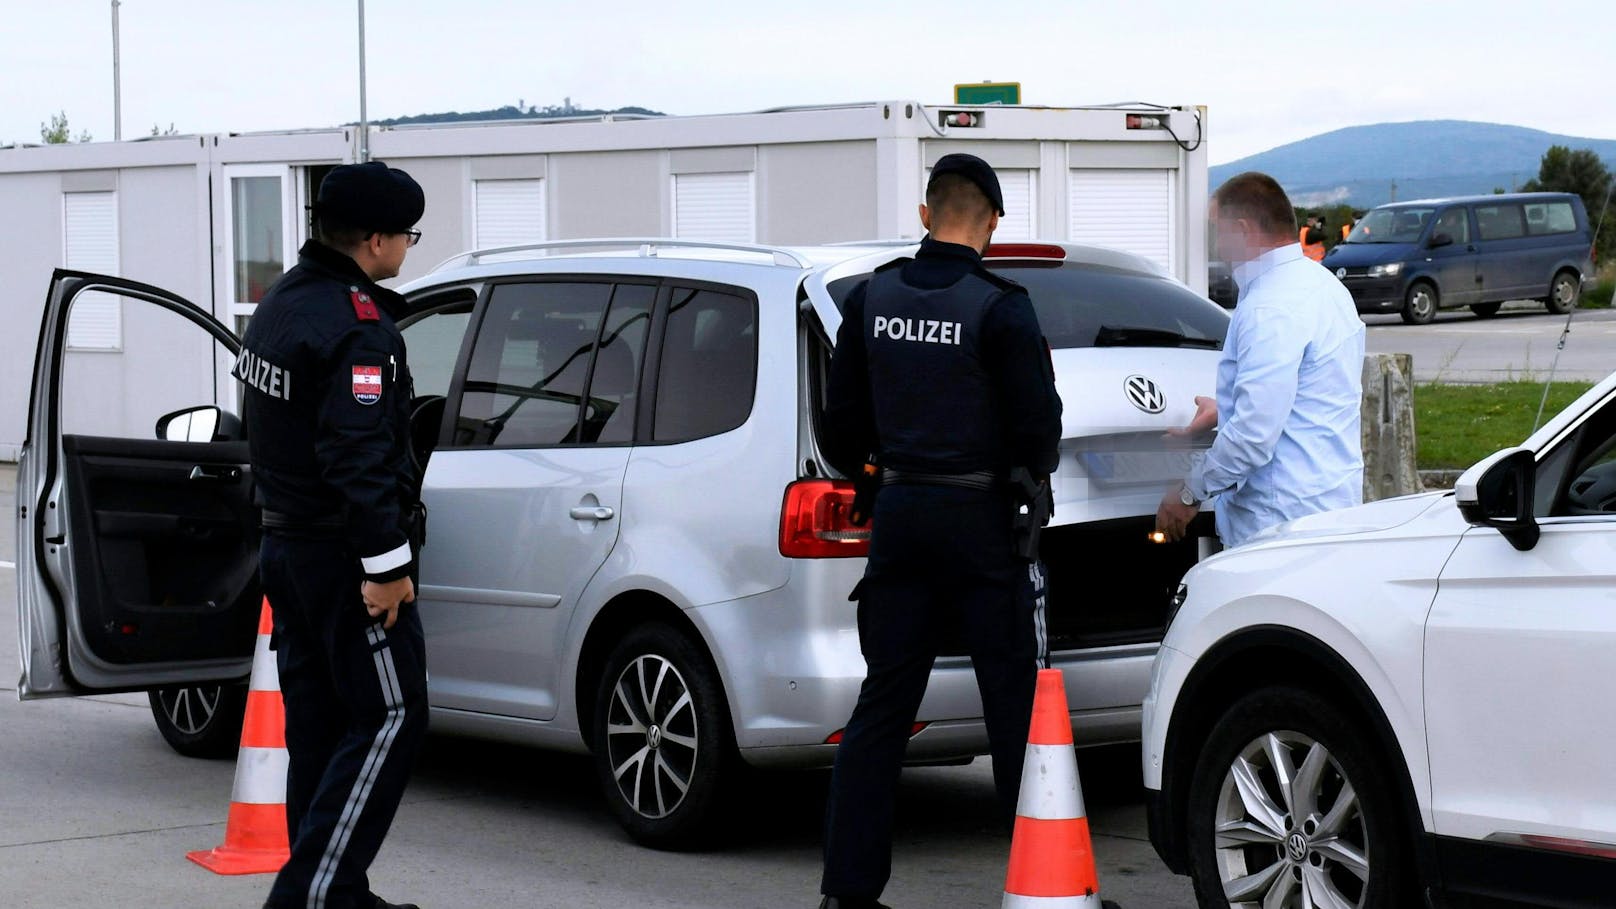 Autofahrer zeigte Polizisten gefälschten Führerschein